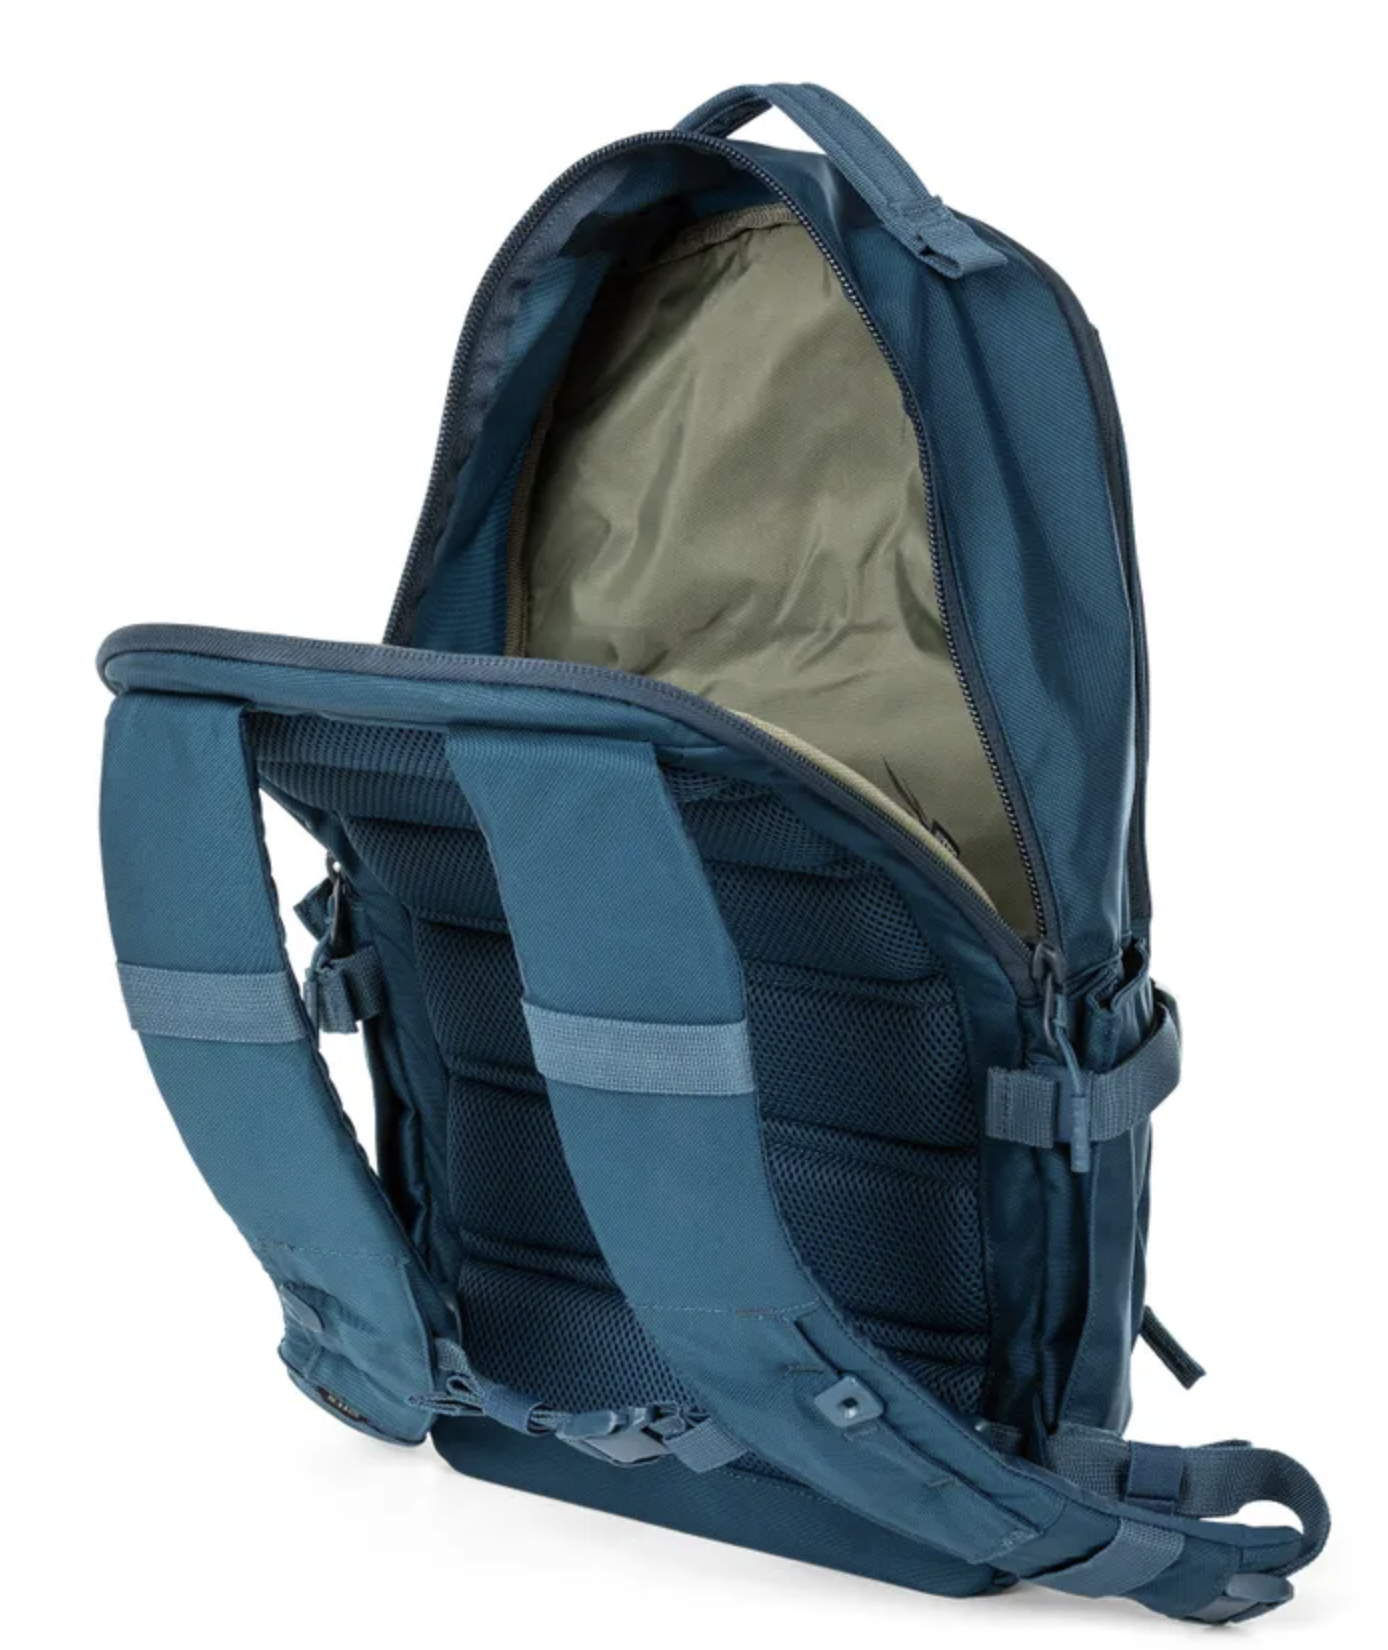 5.11 - LV18 Backpack 2.0 - 30L - Blueblood (622)